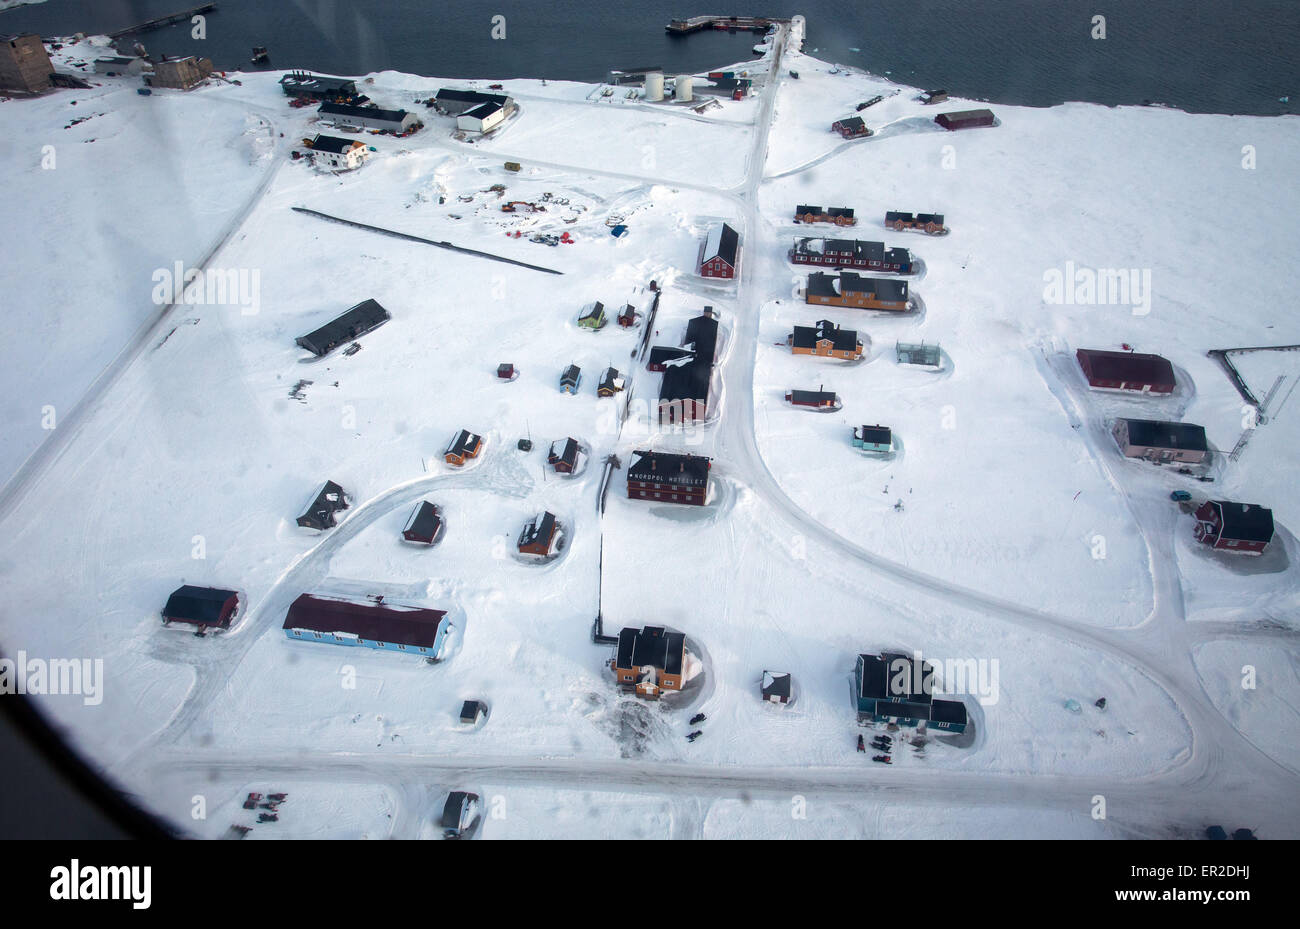 Una veduta aerea sparato da un aereo della stazione di ricerca Kings Bay in Ny-Alesund sull isola Spitsbergen, Norvegia, 10 aprile 2015. Arctic stazioni di ricerca della Norvegia, Germania, Francia e Cina presidiata durante tutto l'anno sono attualmente operative sui terreni della ex sito minerario sull'arcipelago delle Svalbard. L'Italia, Gran Bretagna e Giappone mantenere stazioni di ricerca per periodi di tempo limitati. Scienziati provenienti da Spagna e i Paesi Bassi utilizzano alcuni piccoli edifici. Il mantenuto congiuntamente le infrastrutture di Kings Bay con le sue marine nei laboratori di ricerca, Caff, strutture portuali e worksho Foto Stock